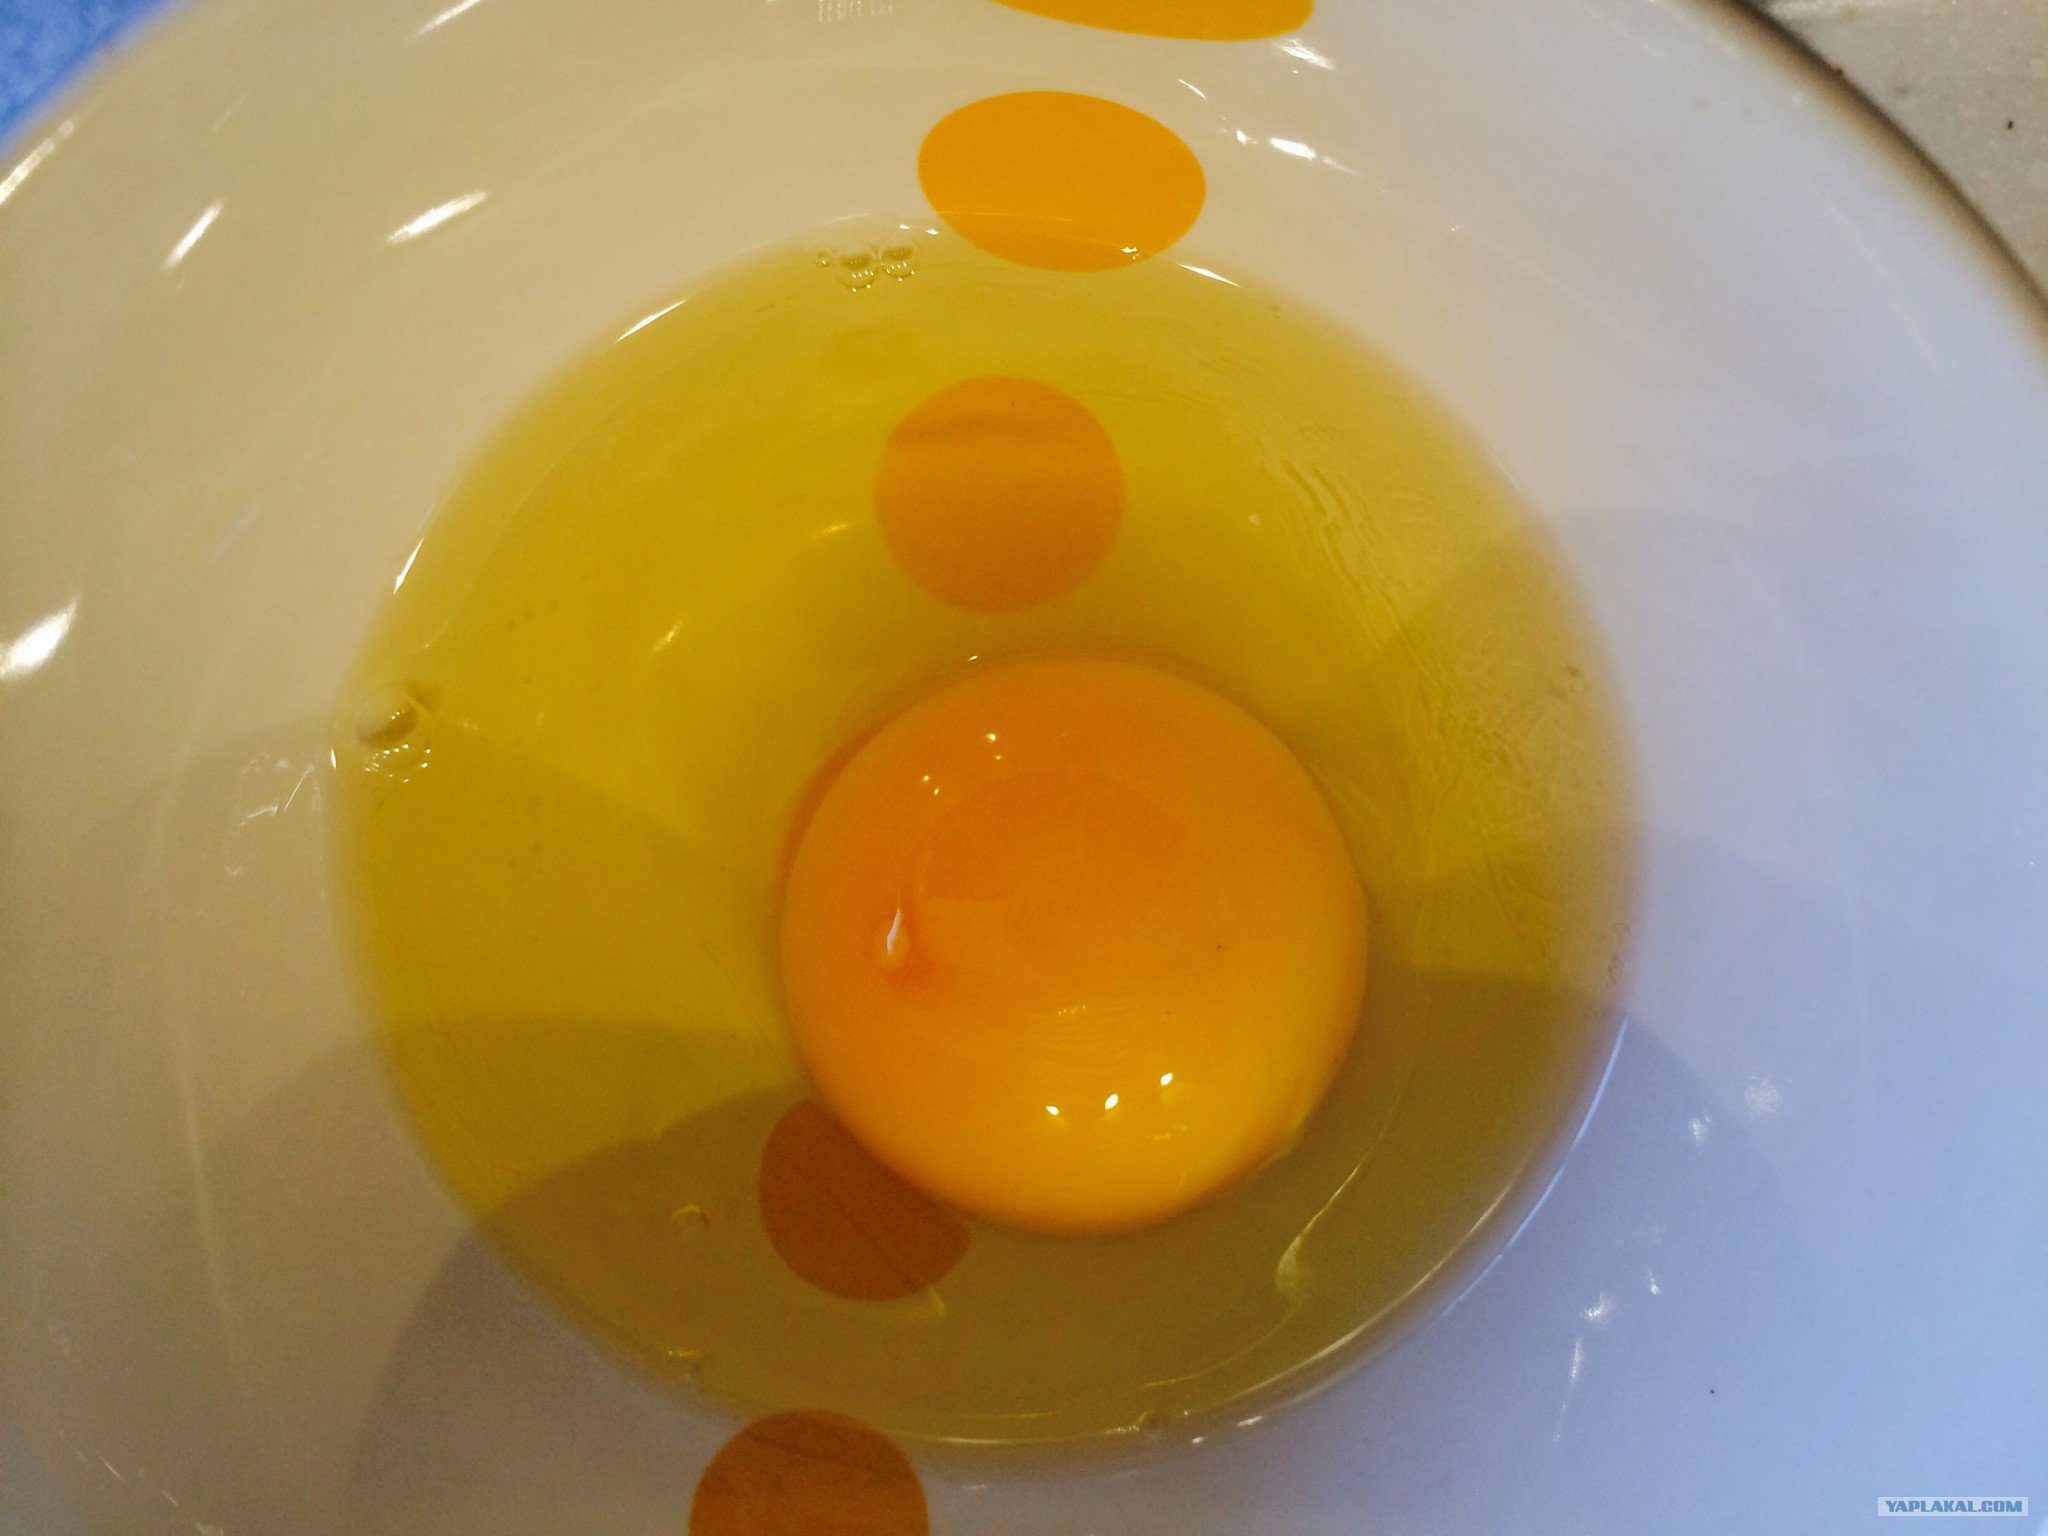 В яичном белке вода. Желтый белок у яйца. Белок в яйце желтого цвета. Белок у яйца желтоватого цвета. Яйцо желтого цвета внутри.